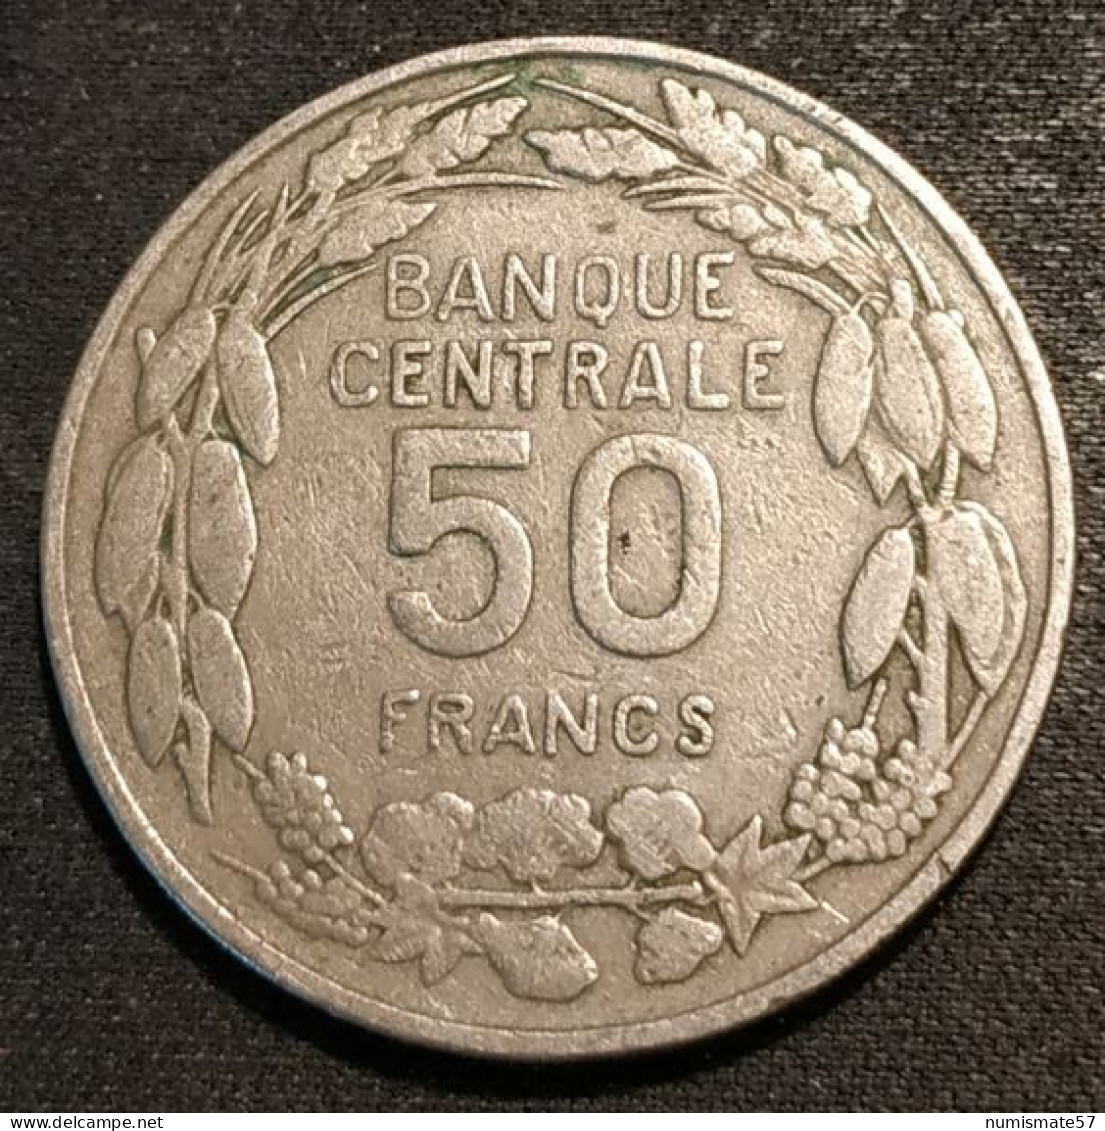 CAMEROUN - 50 FRANCS 1960 - KM 13 - ( 1er JANVIER 1960 - PAIX TRAVAIL PATRIE ) - Kameroen